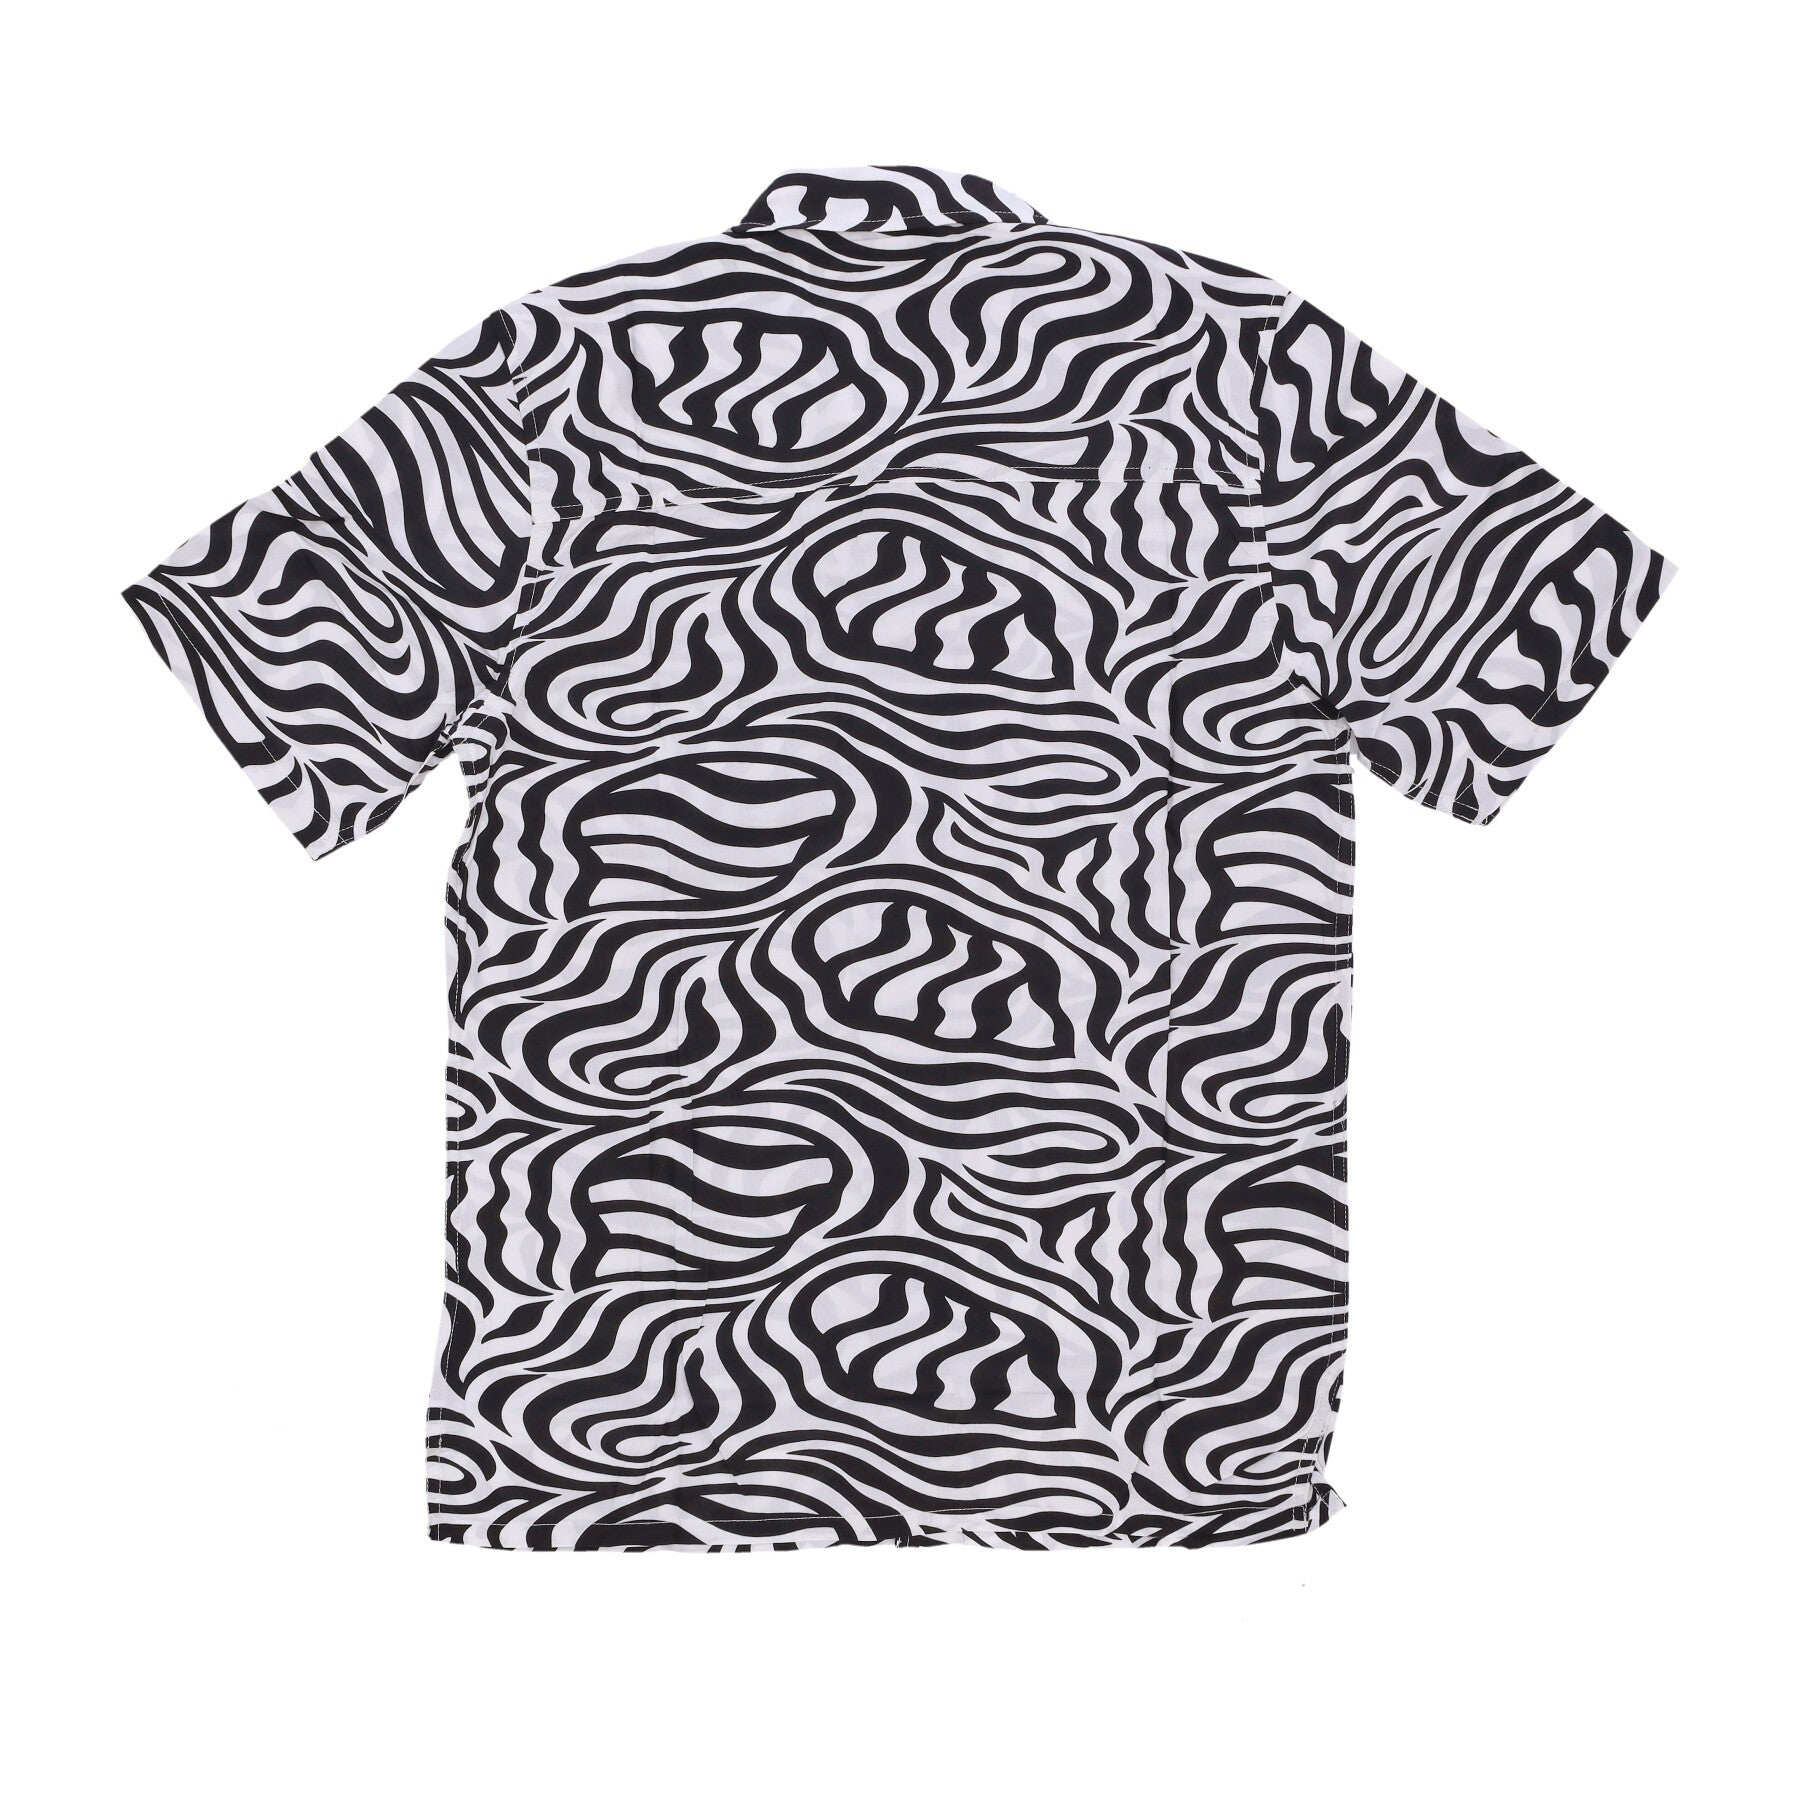 Clackamas Shirt Cloud Zebra Men's Short Sleeve Shirt